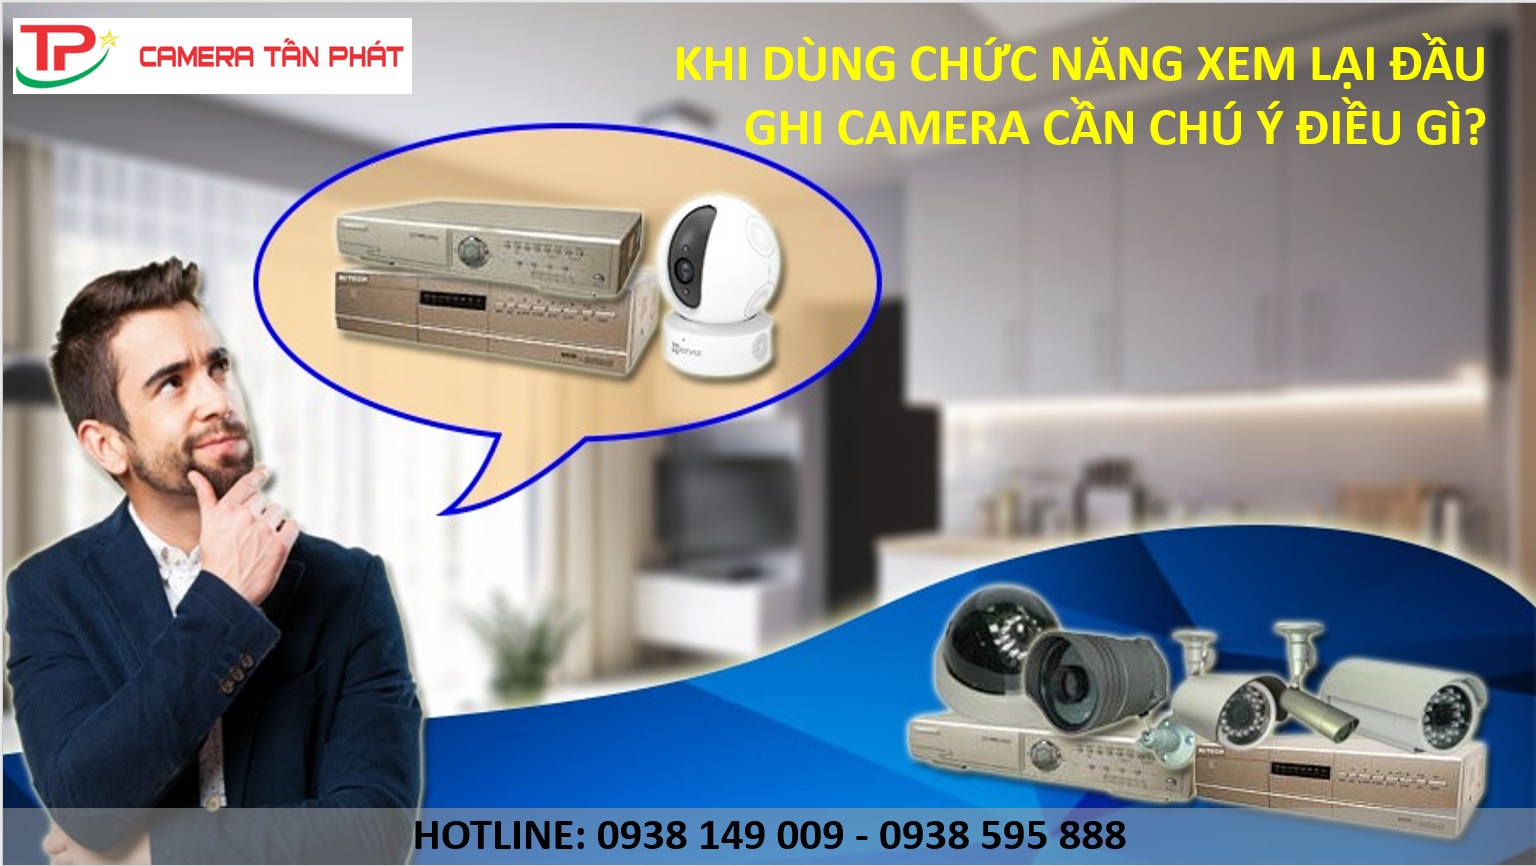 Khi Dung Chuc Nang Xem Lai Dau Ghi Camera Can Chu Y Dieu Gi